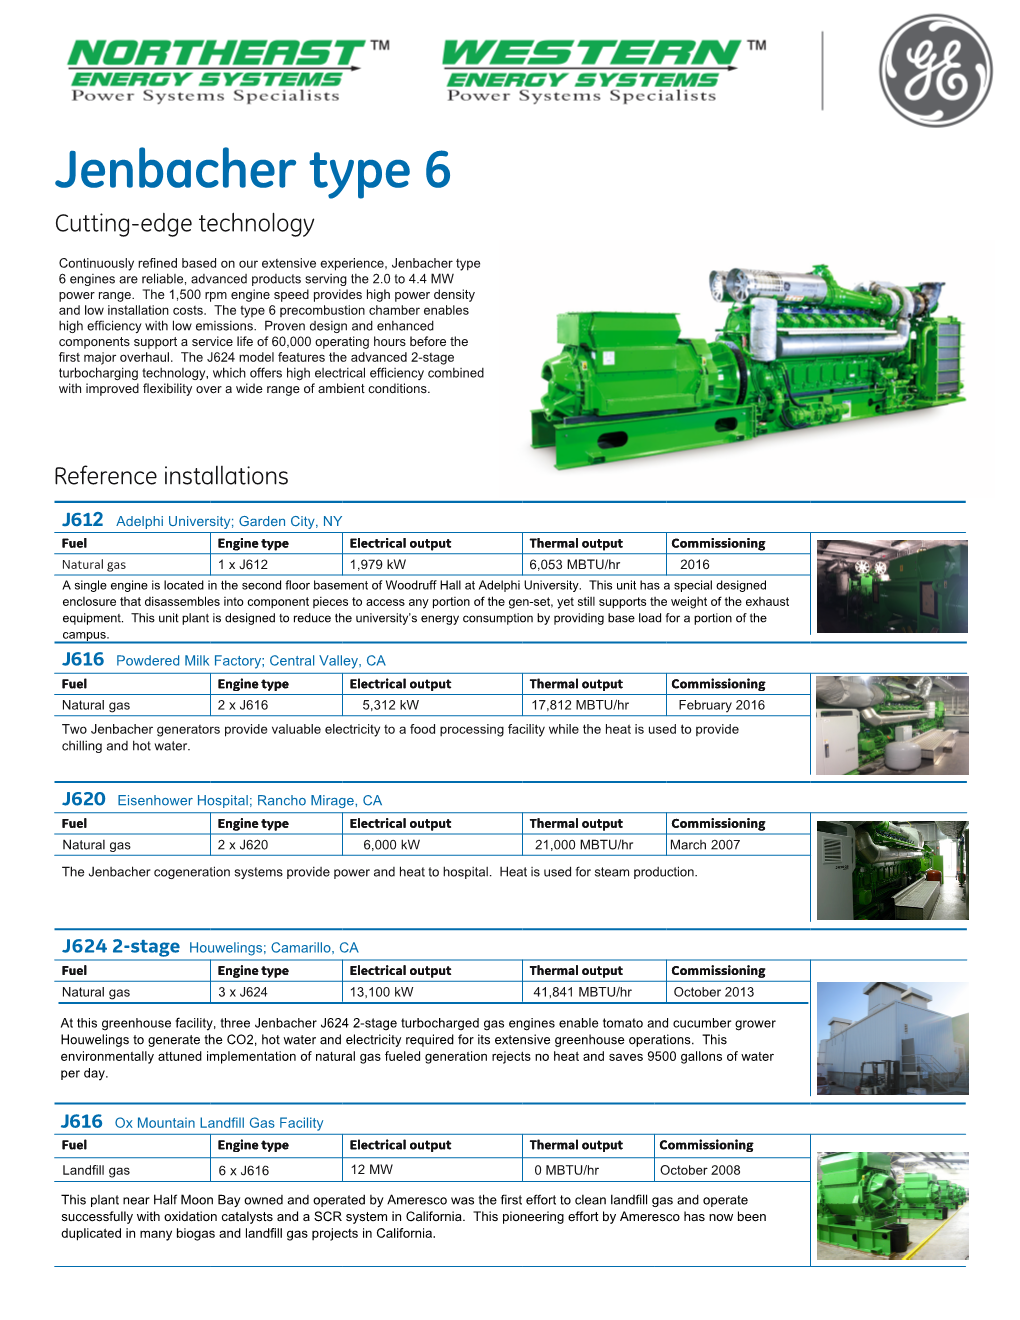 Jenbacher Type 6 Fact Sheet